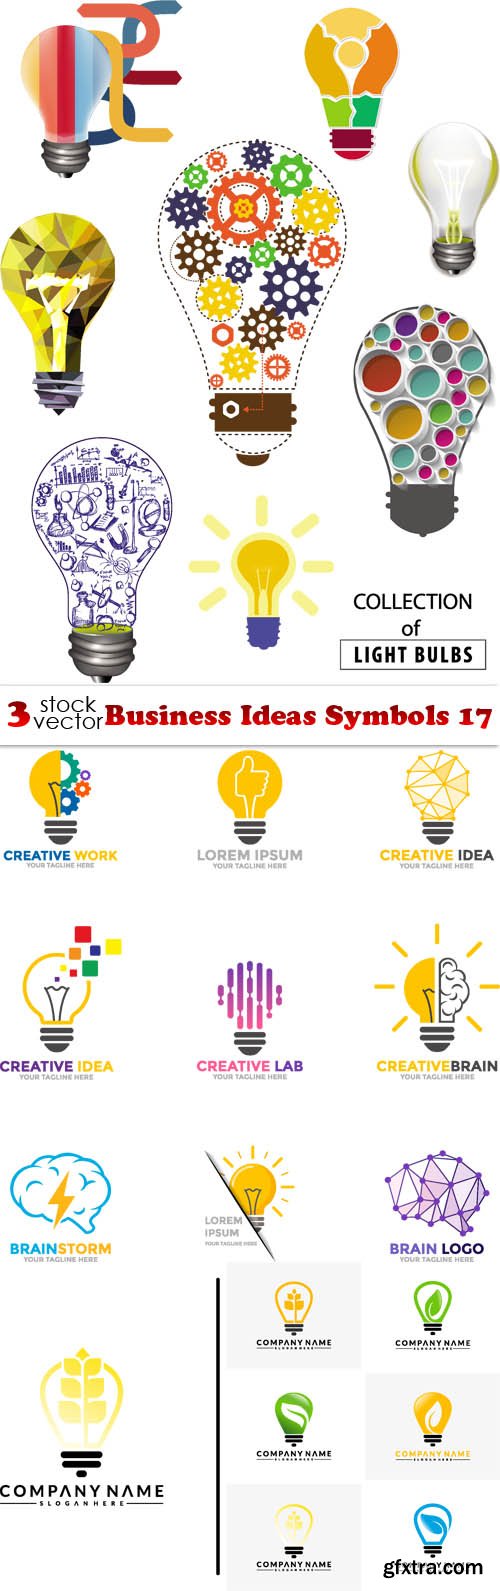 Vectors - Business Ideas Symbols 17